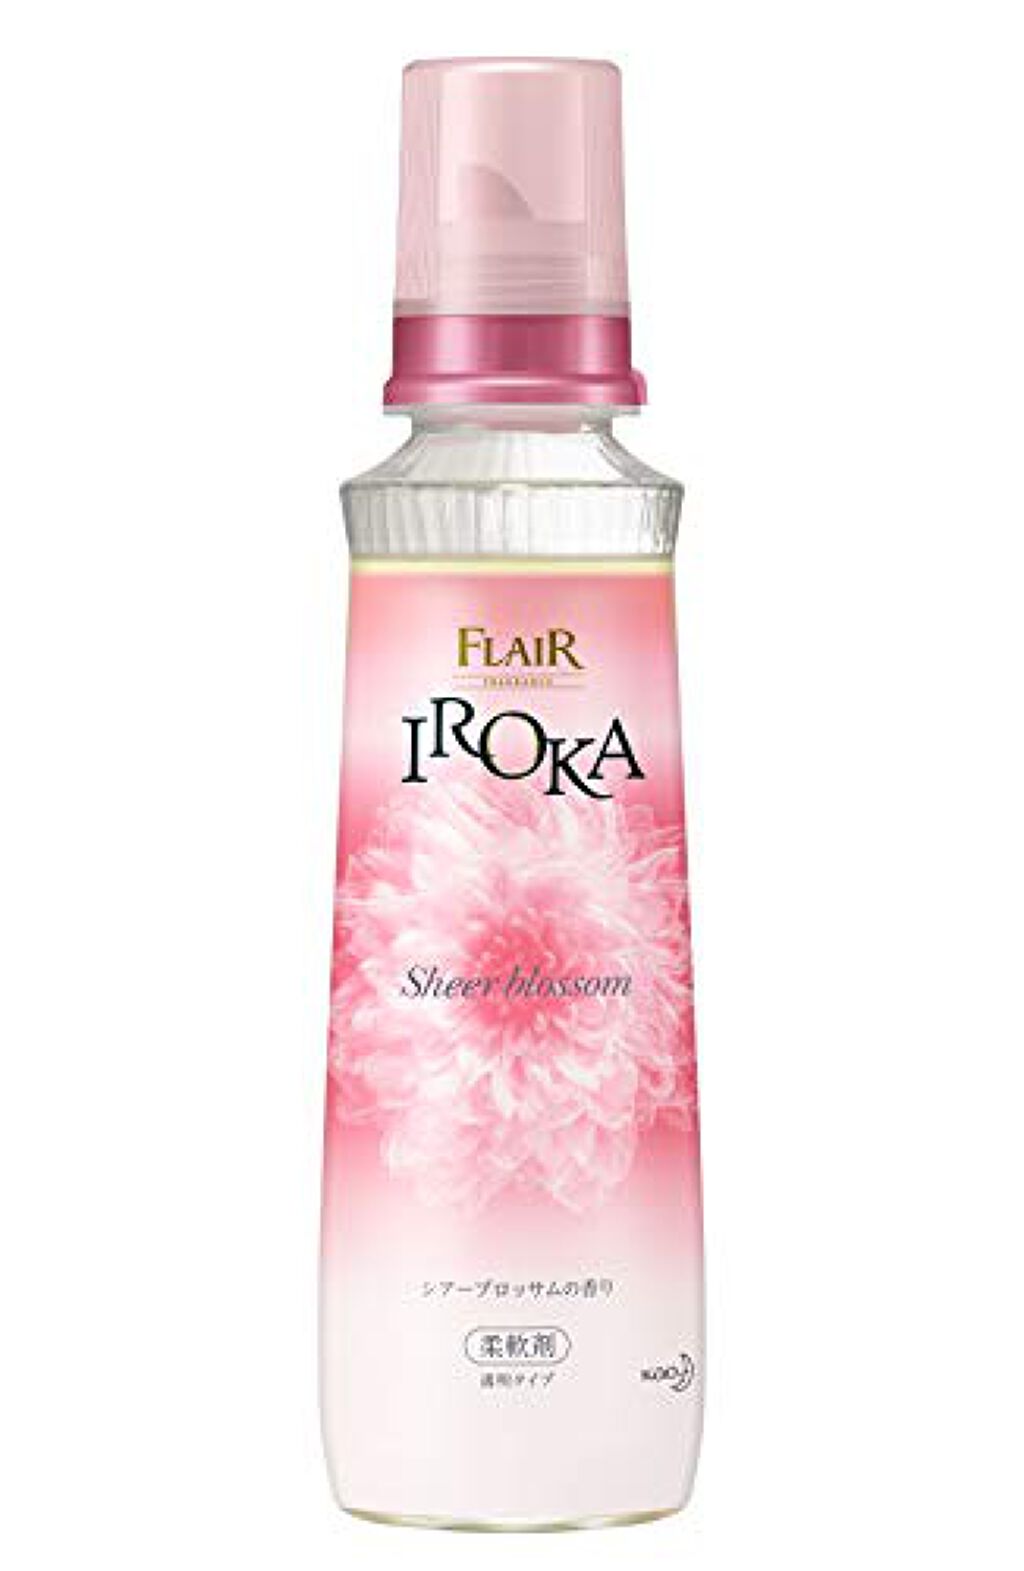 【10個セット】IROKA シアーブロッサムの香り 詰め替え 大